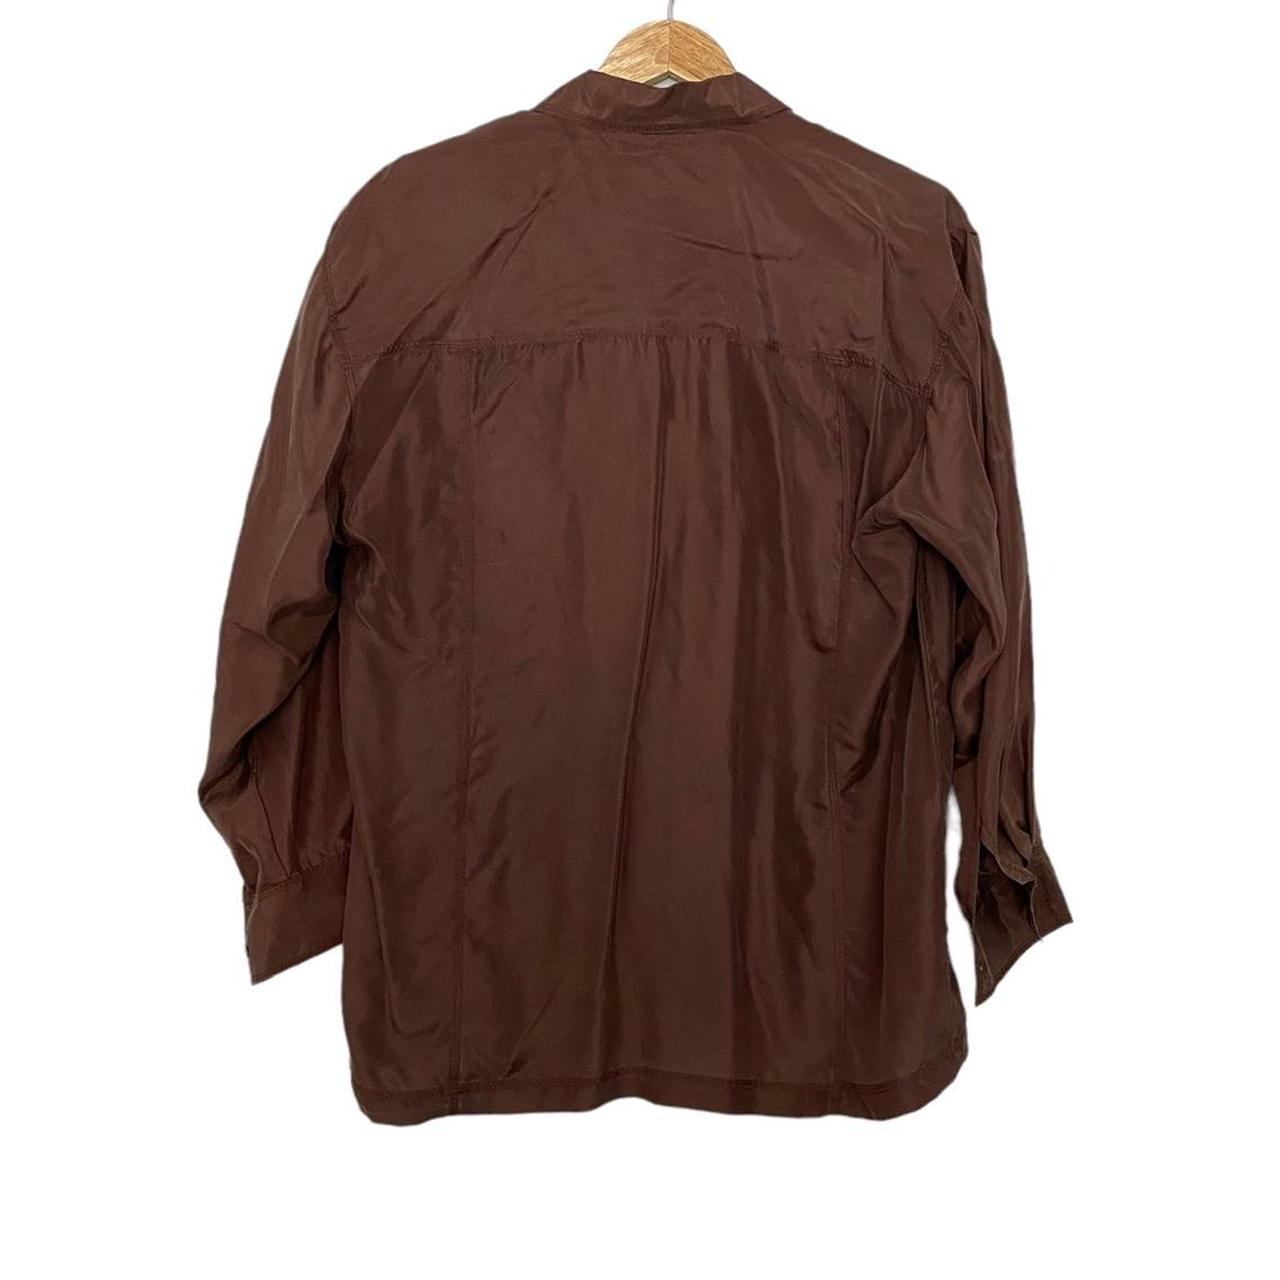 Marnie West 100% Silk Button Up Brown Shirt Women's... - Depop